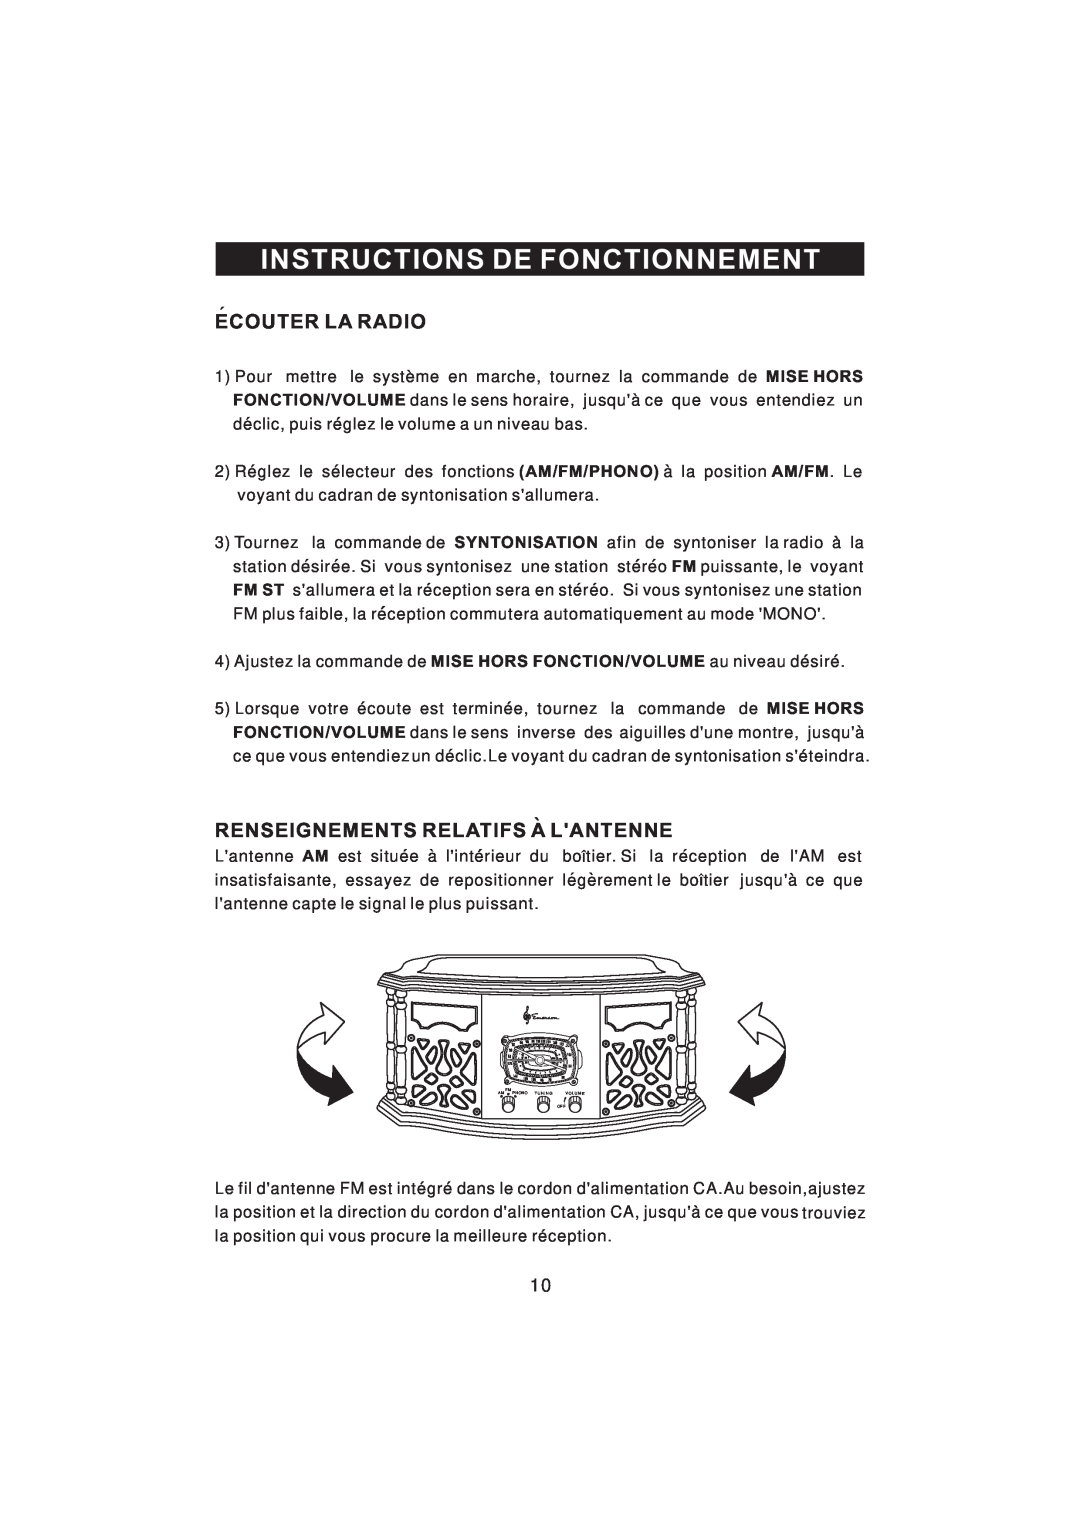 Emerson NR101TTC owner manual Instructions De Fonctionnement, Ecouter La Radio, Renseignements Relatifs A Lantenne 